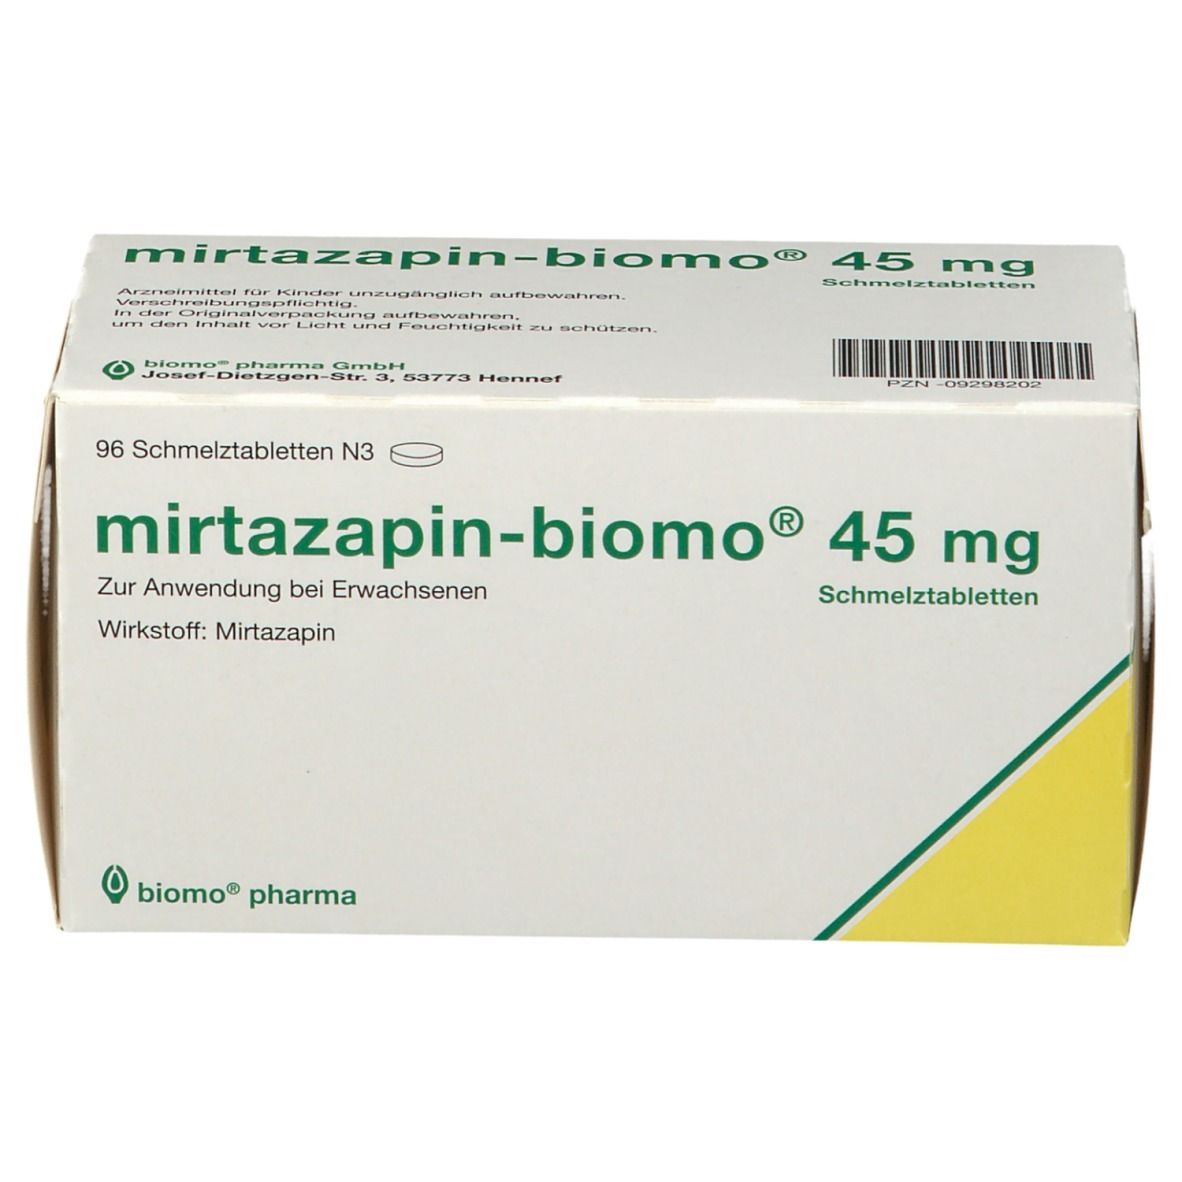 mirtazapin-biomo® 45 mg